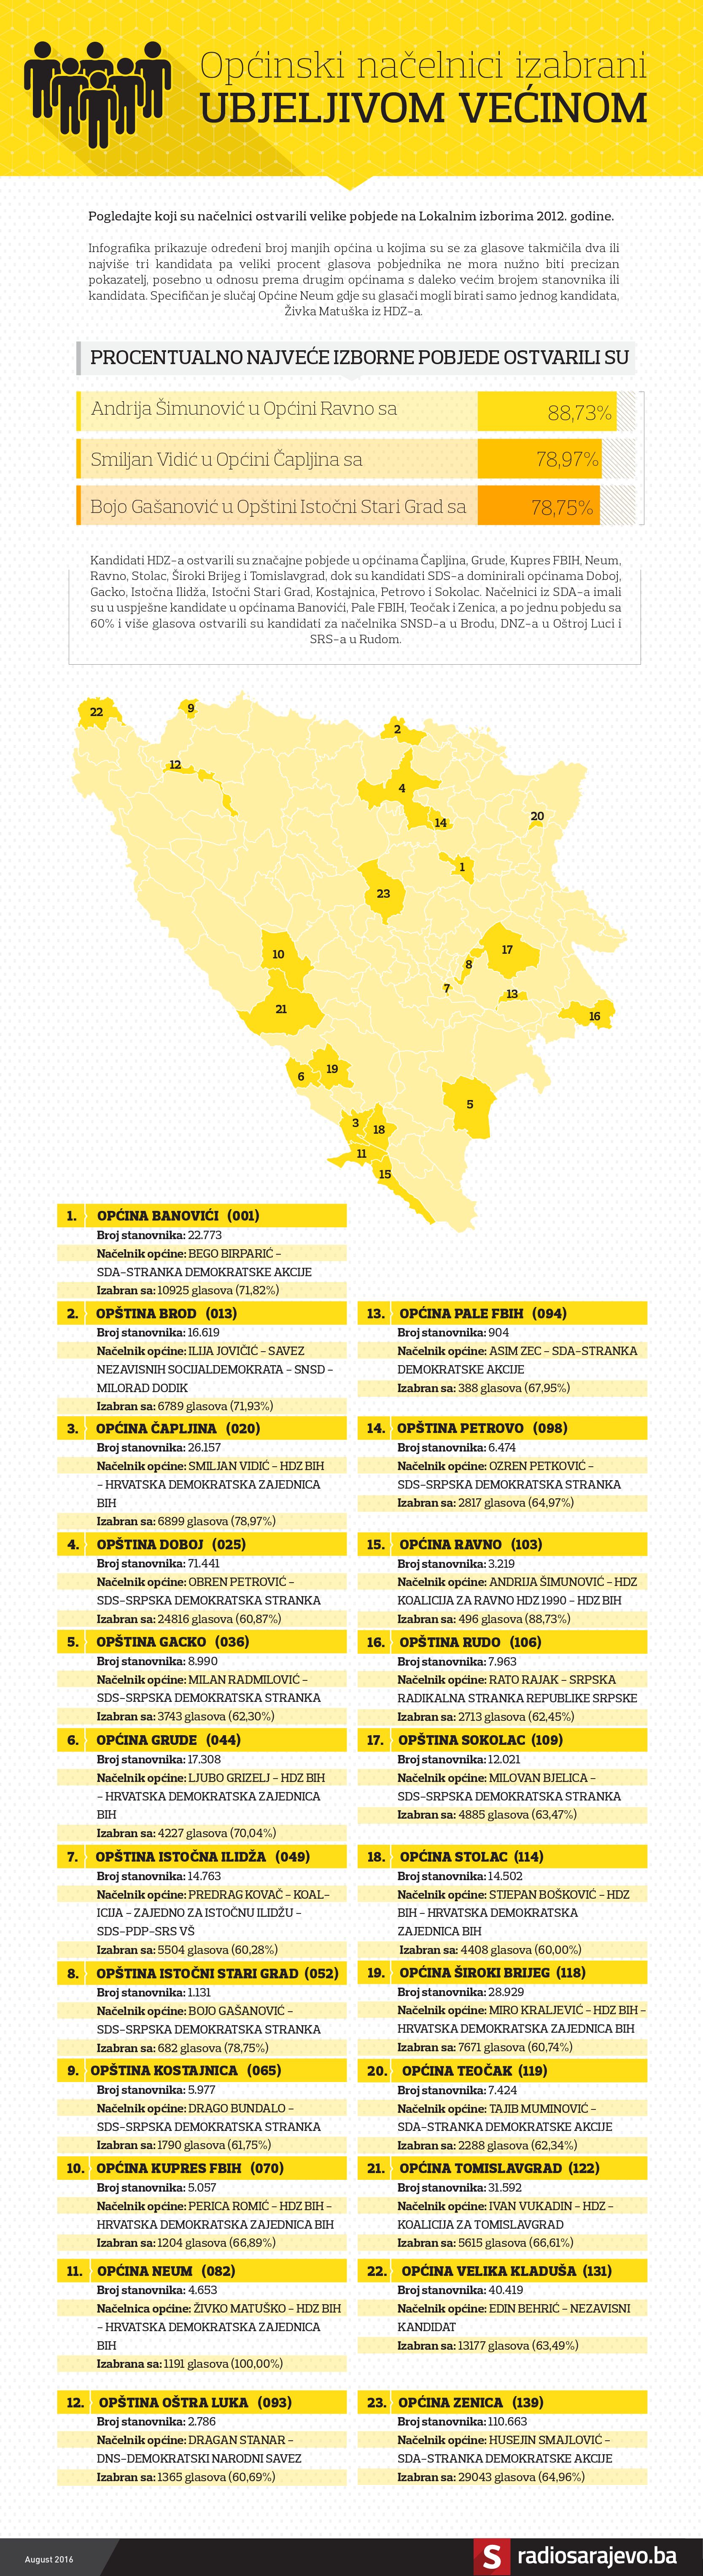 Nacelnici_Ubjedljiva_vecina.jpg - Infografika: Načelnici koji su 2012. izabrani ubjedljivom većinom 